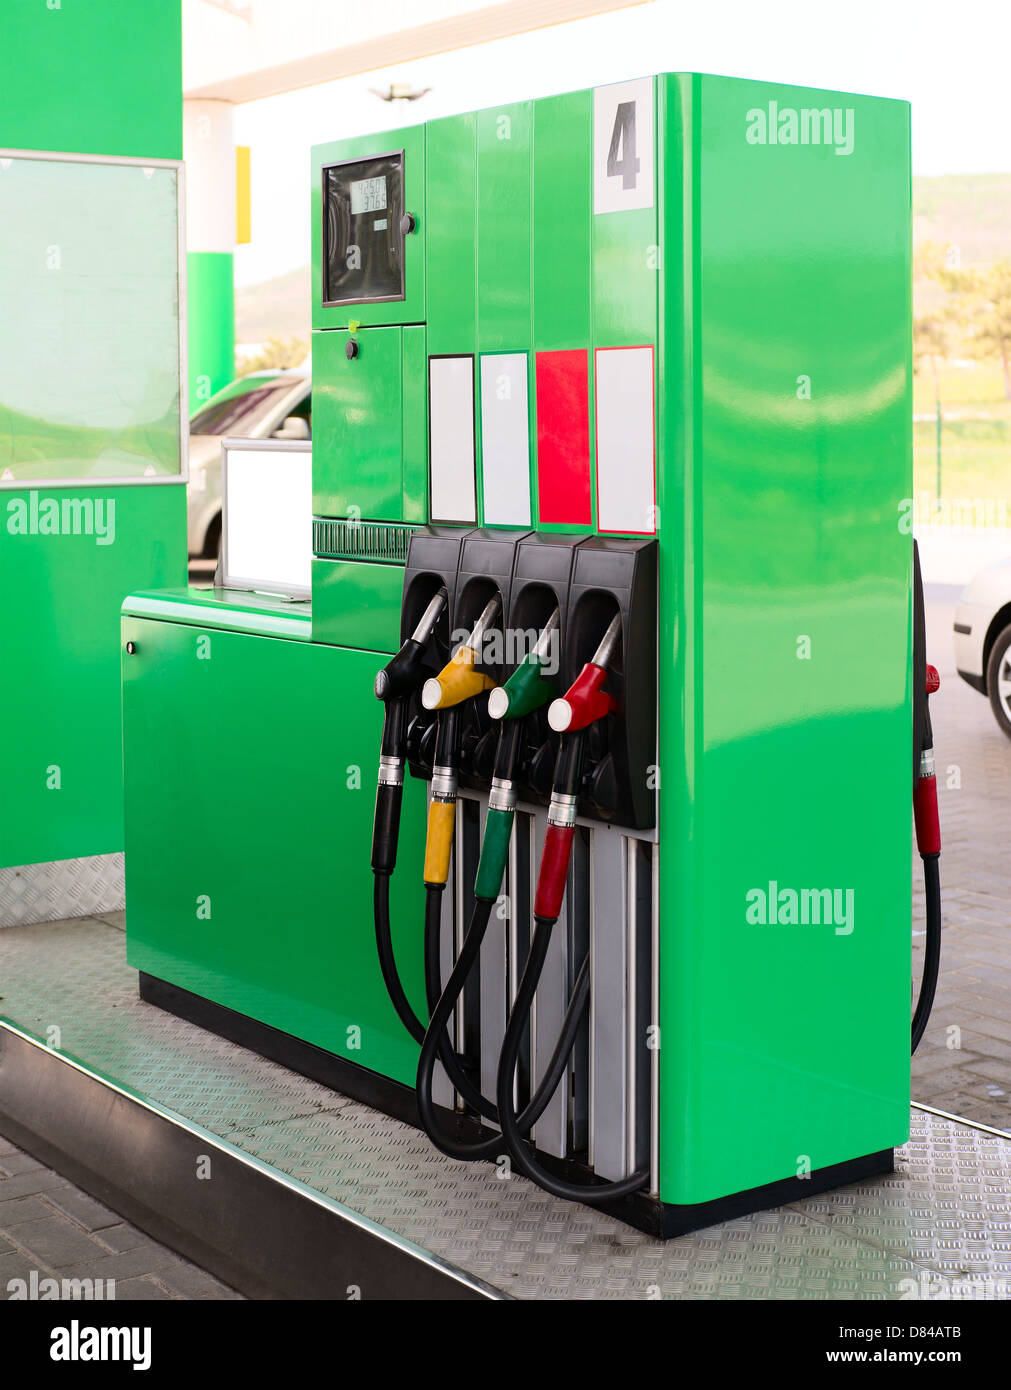 Pompe à essence verte sur une station essence Photo Stock - Alamy